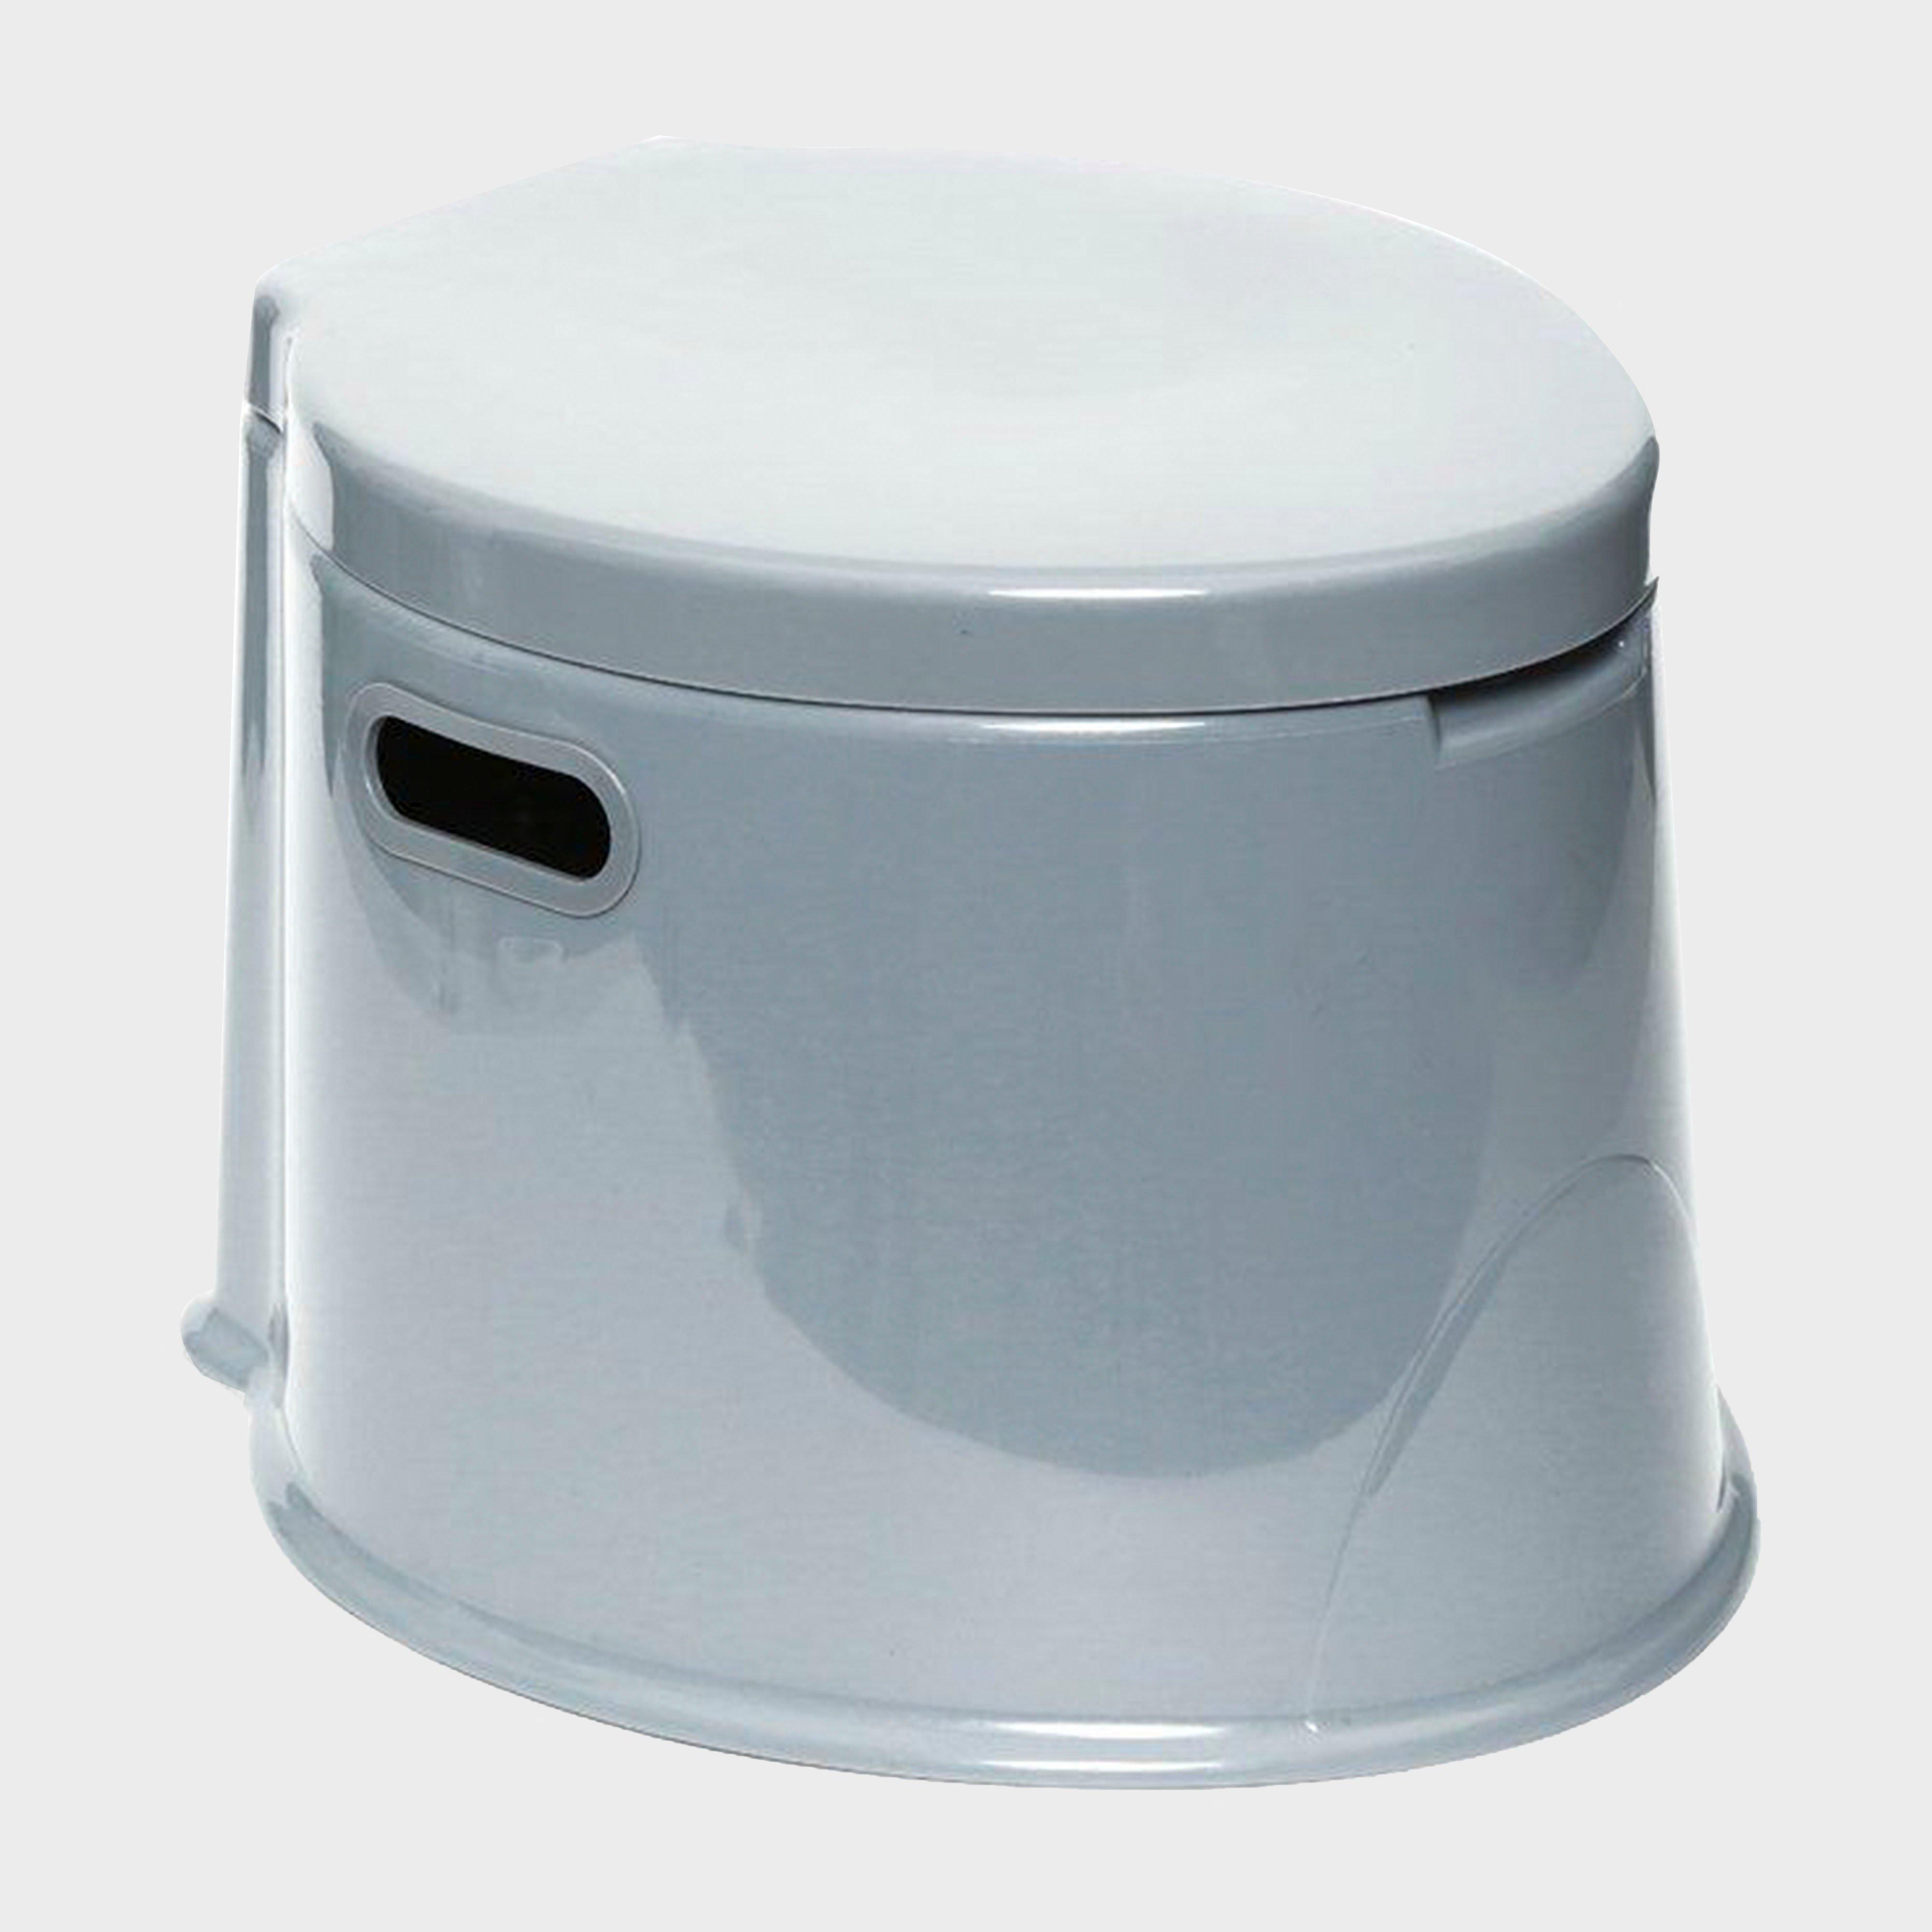 Hi-Gear Portable Camping Toilet - Grey, Grey